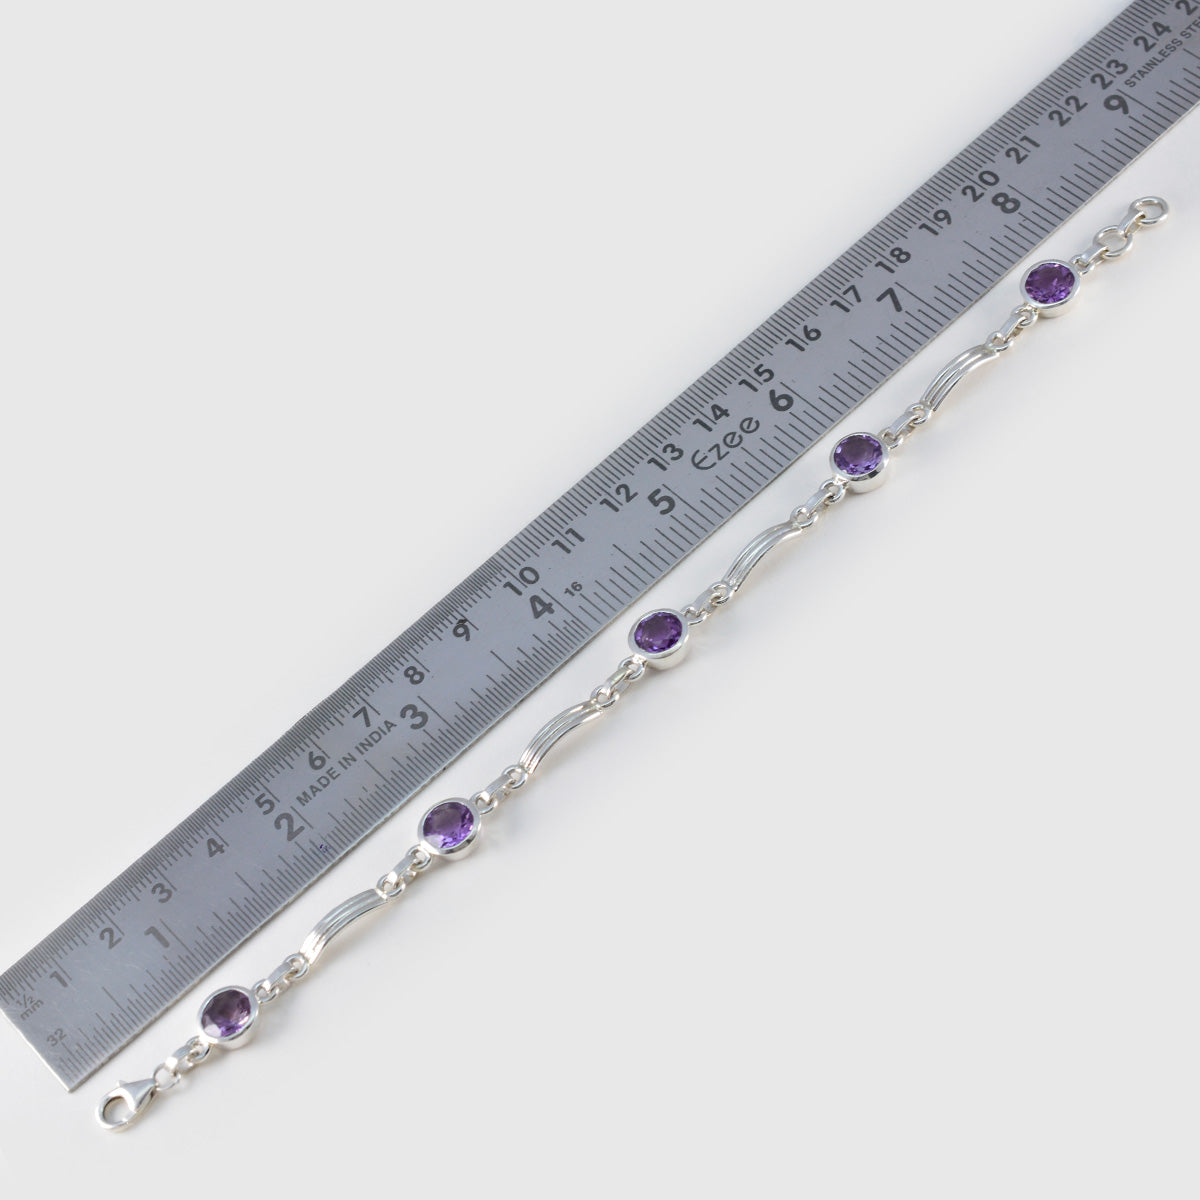 Riyo Excellent 925 Sterling Silber Armband für Damen, Amethyst-Armband, Lünettenfassung, Armband mit Glieder-Charm-Armband, Größe L, 15,2–21,6 cm.